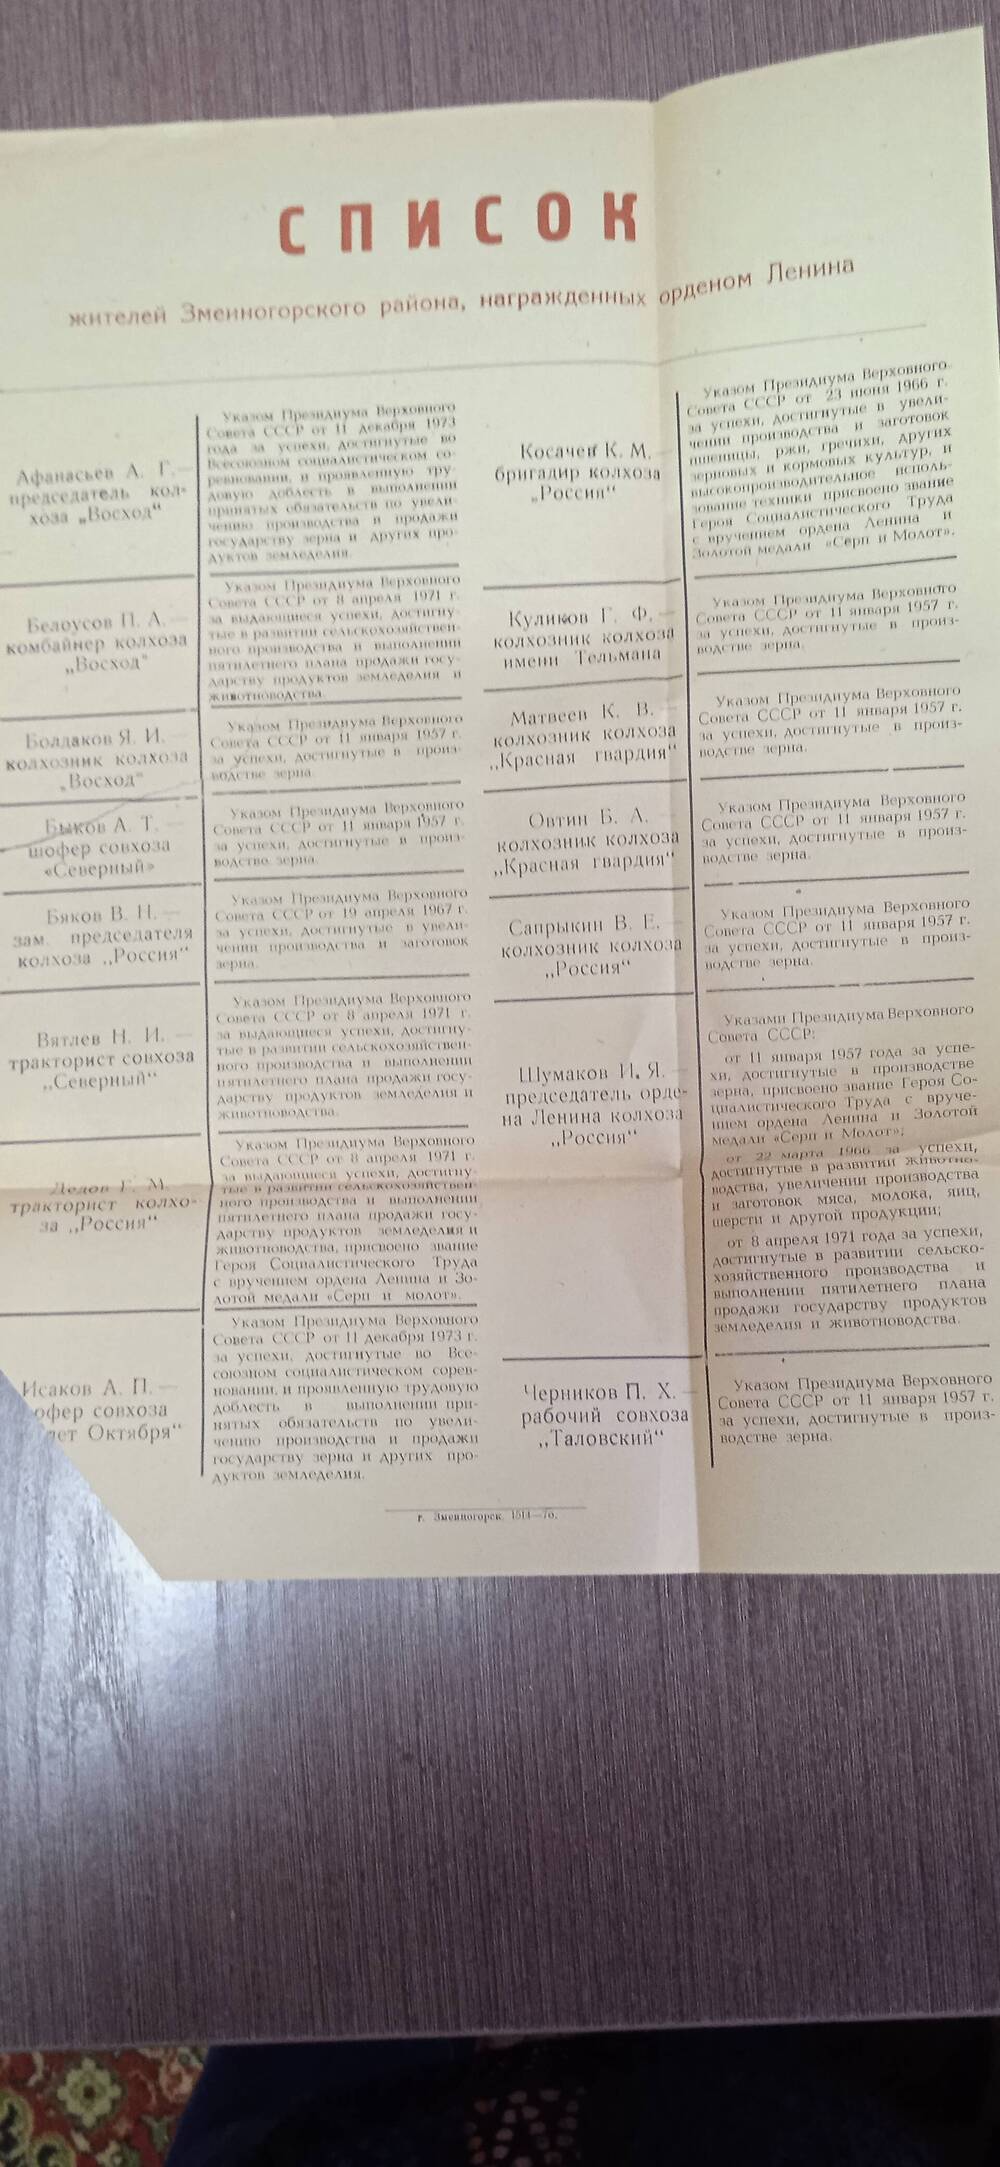 Список жителей Змеиногорского района, награжденных орденом Ленина.